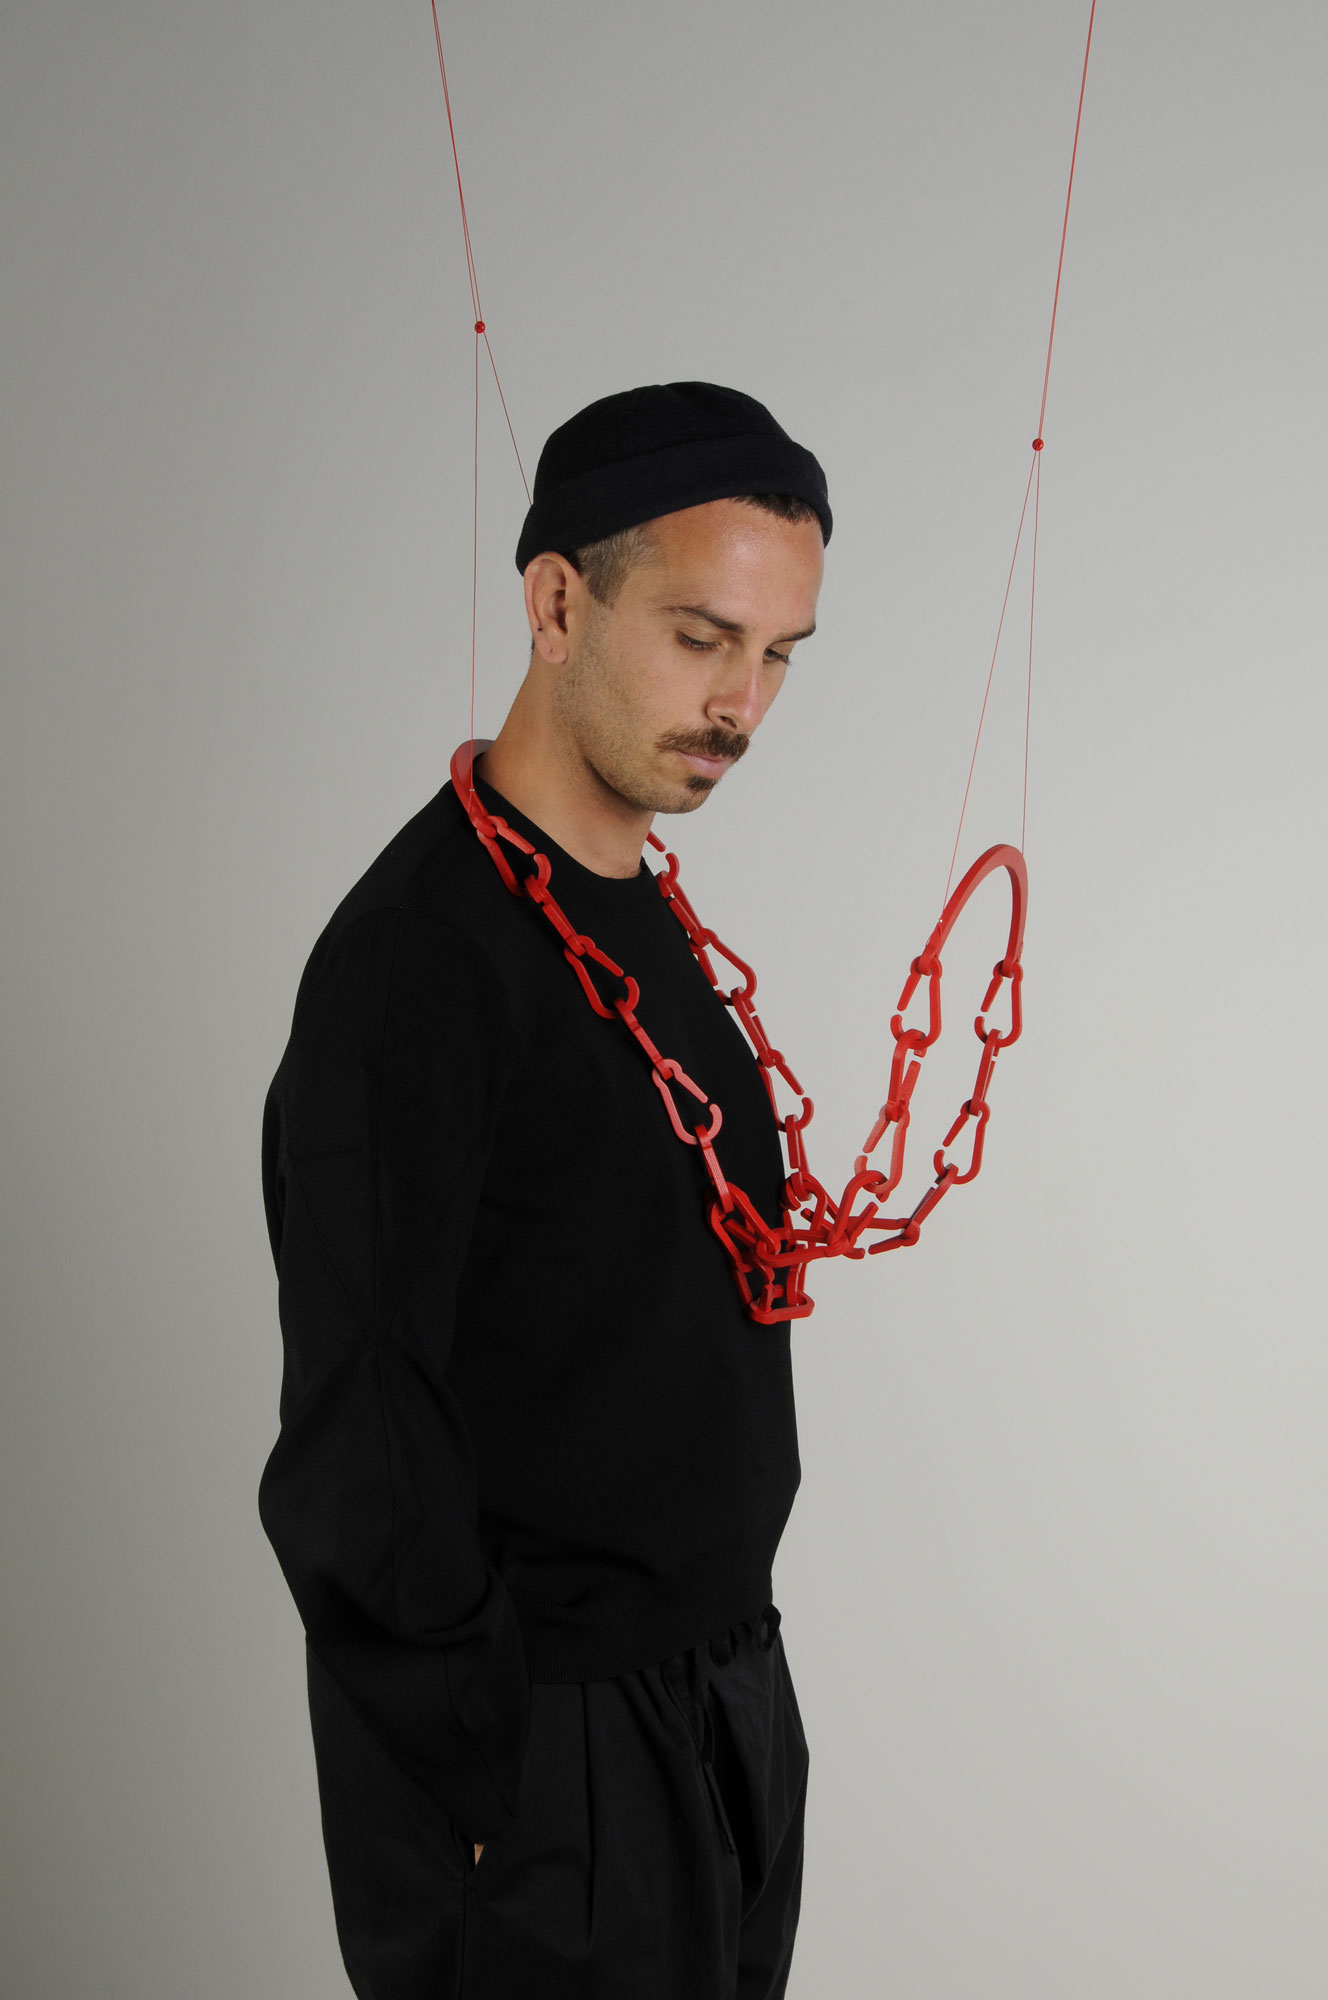 THE HUG de la collection OXYTOCIN (RED IS THE COLOR OF LOVE) en collaboration avec Alejandro Ruiz, collier pour 2 personnes - bois, peinture, corde synthétique, perles à écraser, découpe sur bois -  L.22 x l.30 x h.43 cm - 2020 - Photo : F. Kada